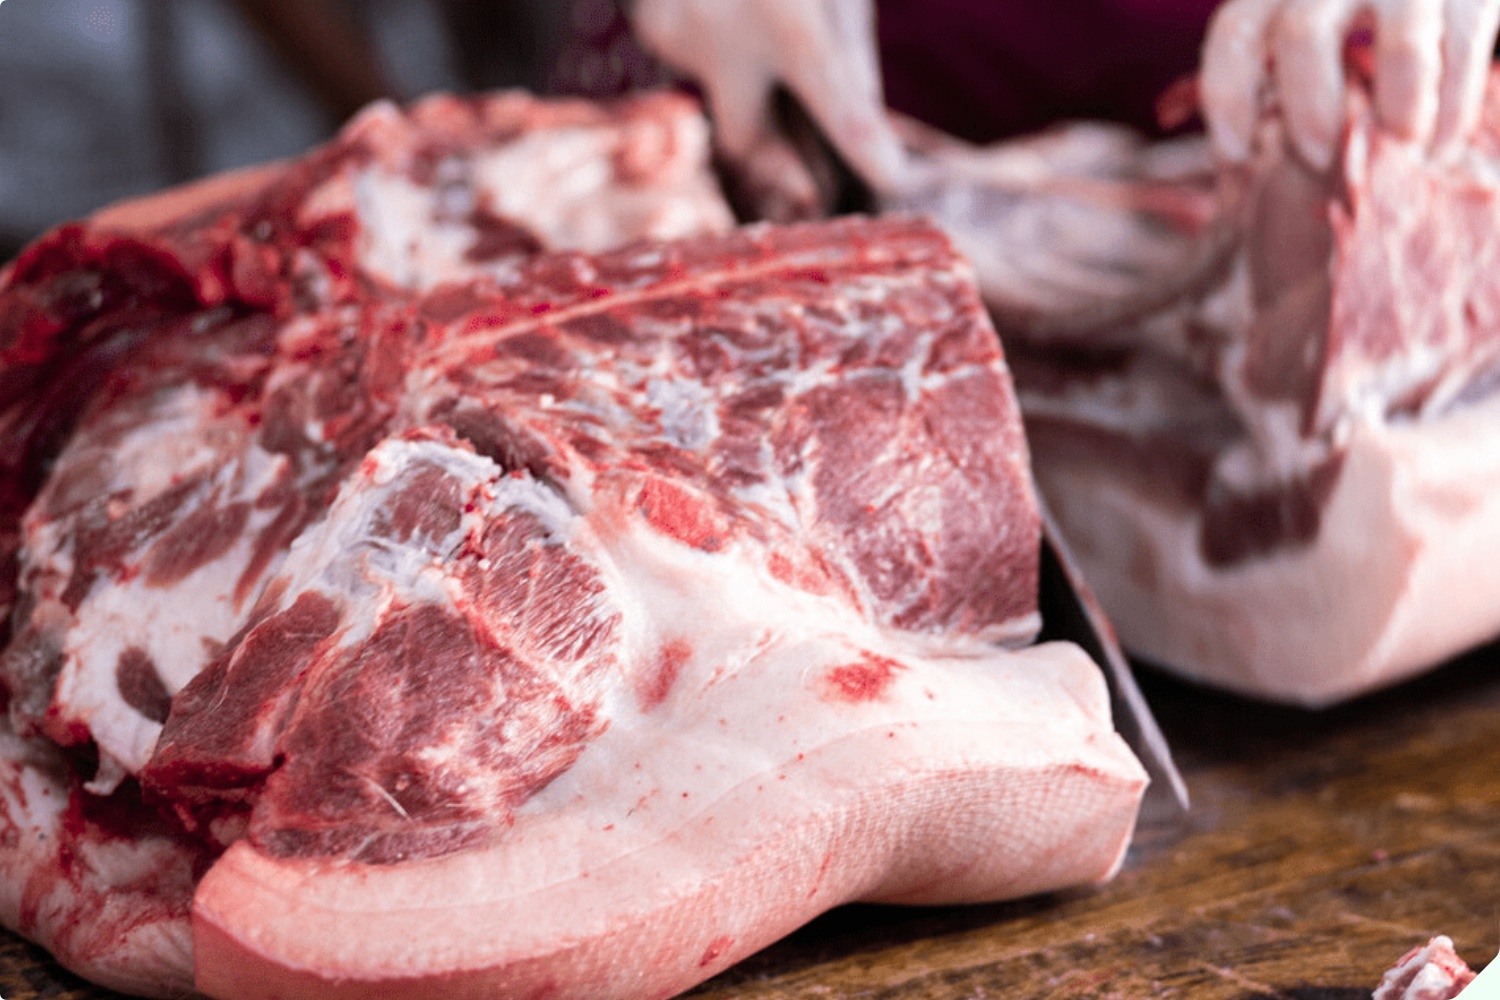 Mua thịt lợn nên chọn miếng sẫm hay nhạt màu? Cứ nhìn kỹ 3 điểm, người bán thịt tài mấy cũng không lừa được bạn - 7